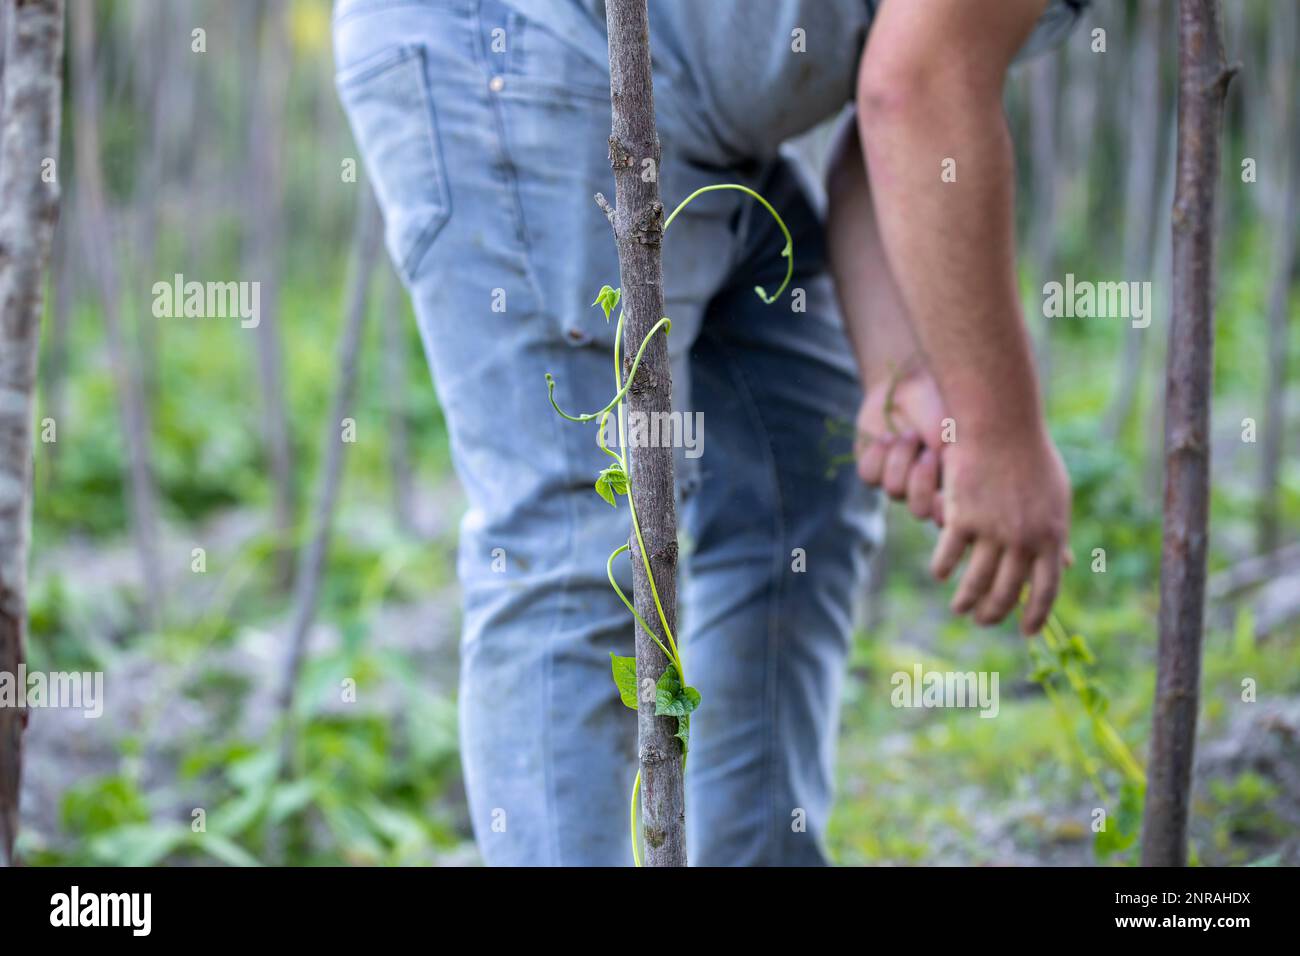 fermier cultivant des haricots verts sur son jardin d'origine Banque D'Images